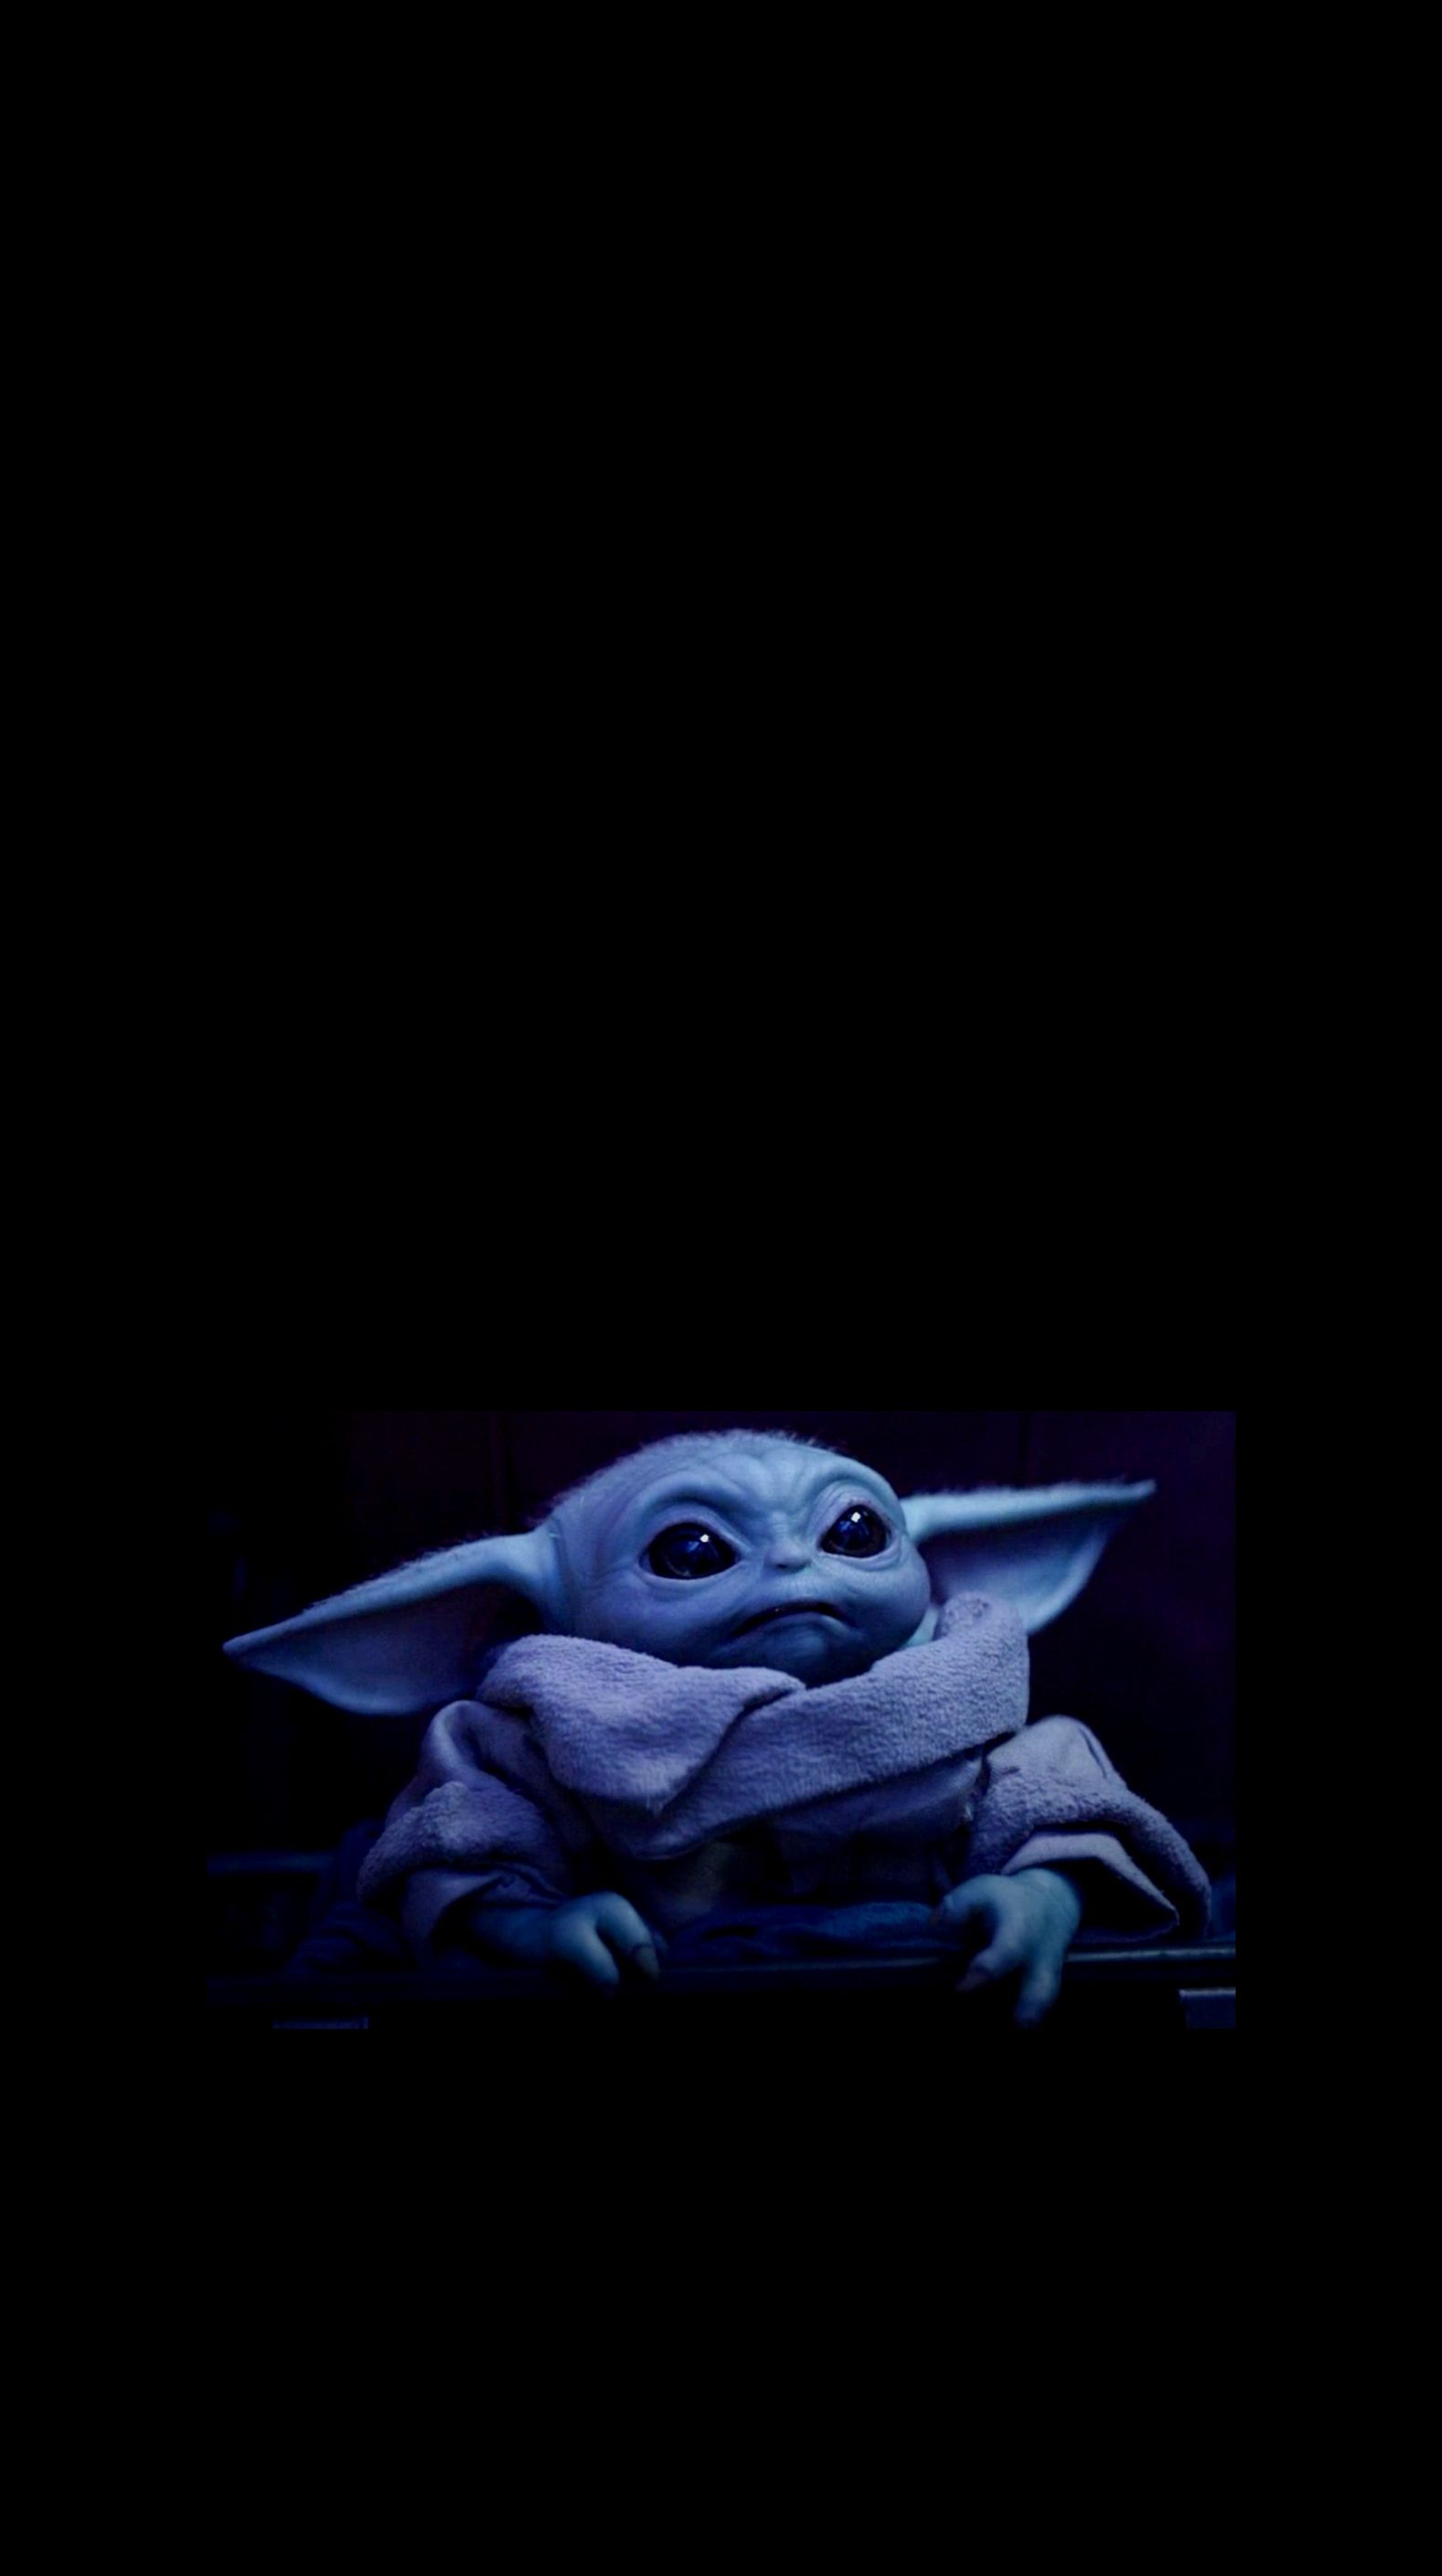 Baby Yoda again